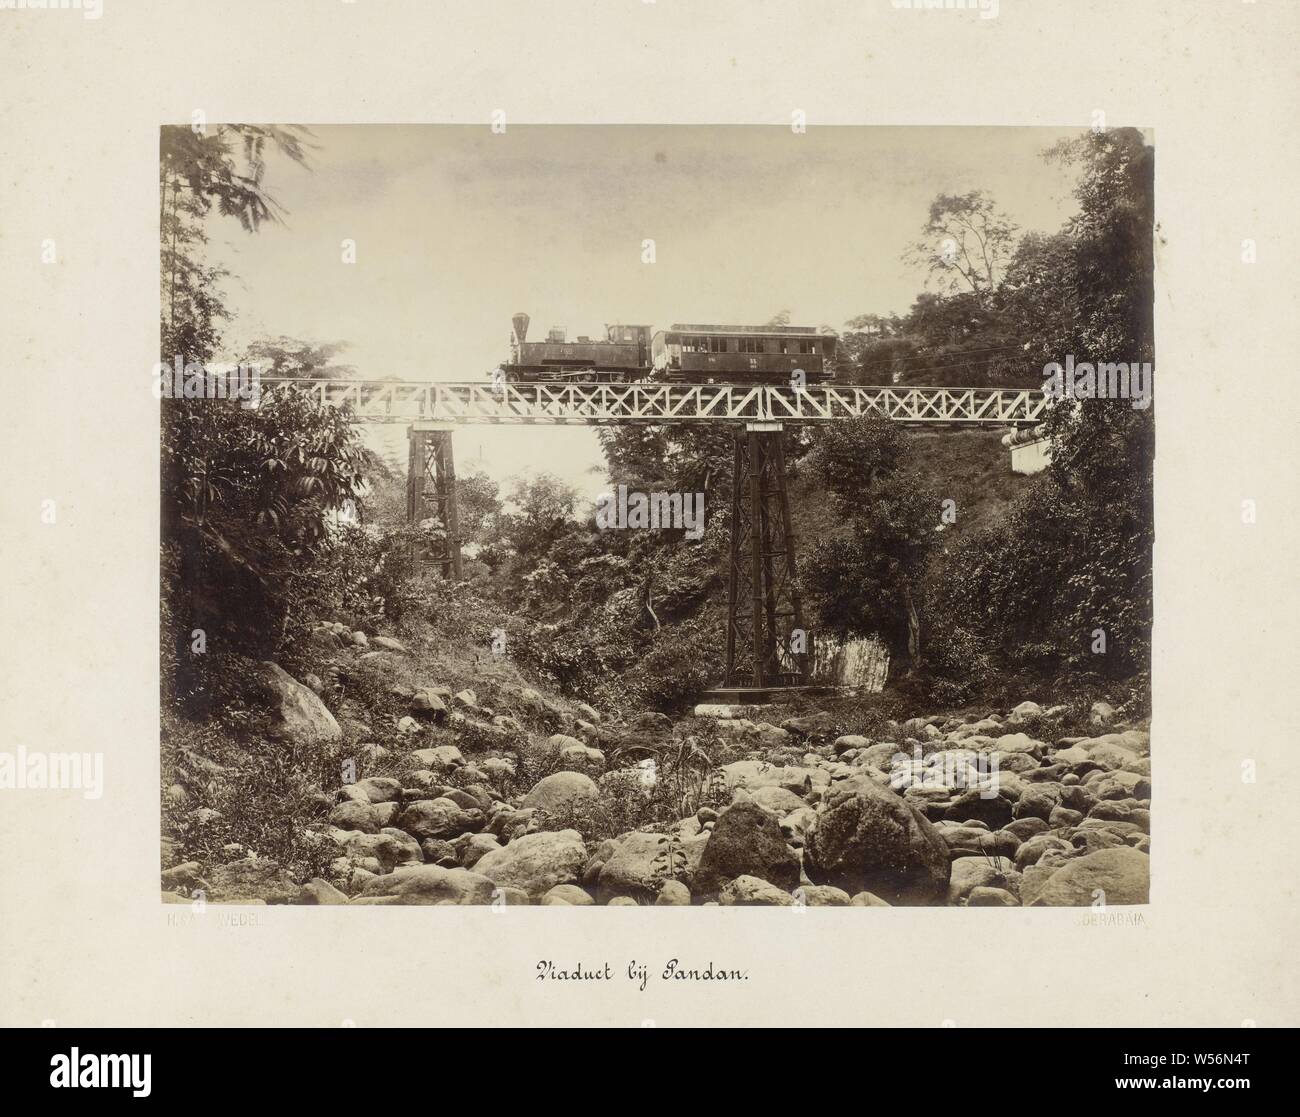 Viadukt in der Nähe von Pandan (Titel auf Objekt) Staatsbahn in Java (Titel der Serie), ein Viadukt oder Eisenbahn Brücke über eine Schlucht oder einem trockenen Flussbett in der Nähe von Pandan. Es ist ein Zug, der mit einem Pkw auf der Brücke. Teil einer Gruppe von 62 Fotos in einer Schachtel mit der Aufschrift 'State Eisenbahnen auf Java" aus dem Jahre 1888, Sandan, Herman Salzwedel (auf Objekt erwähnt), Surabaya, 1880 - 1888, Fotopapier, Eiklar drucken, H 215 mm x B 275 mm H 300 mm x B 370 mm Stockfoto